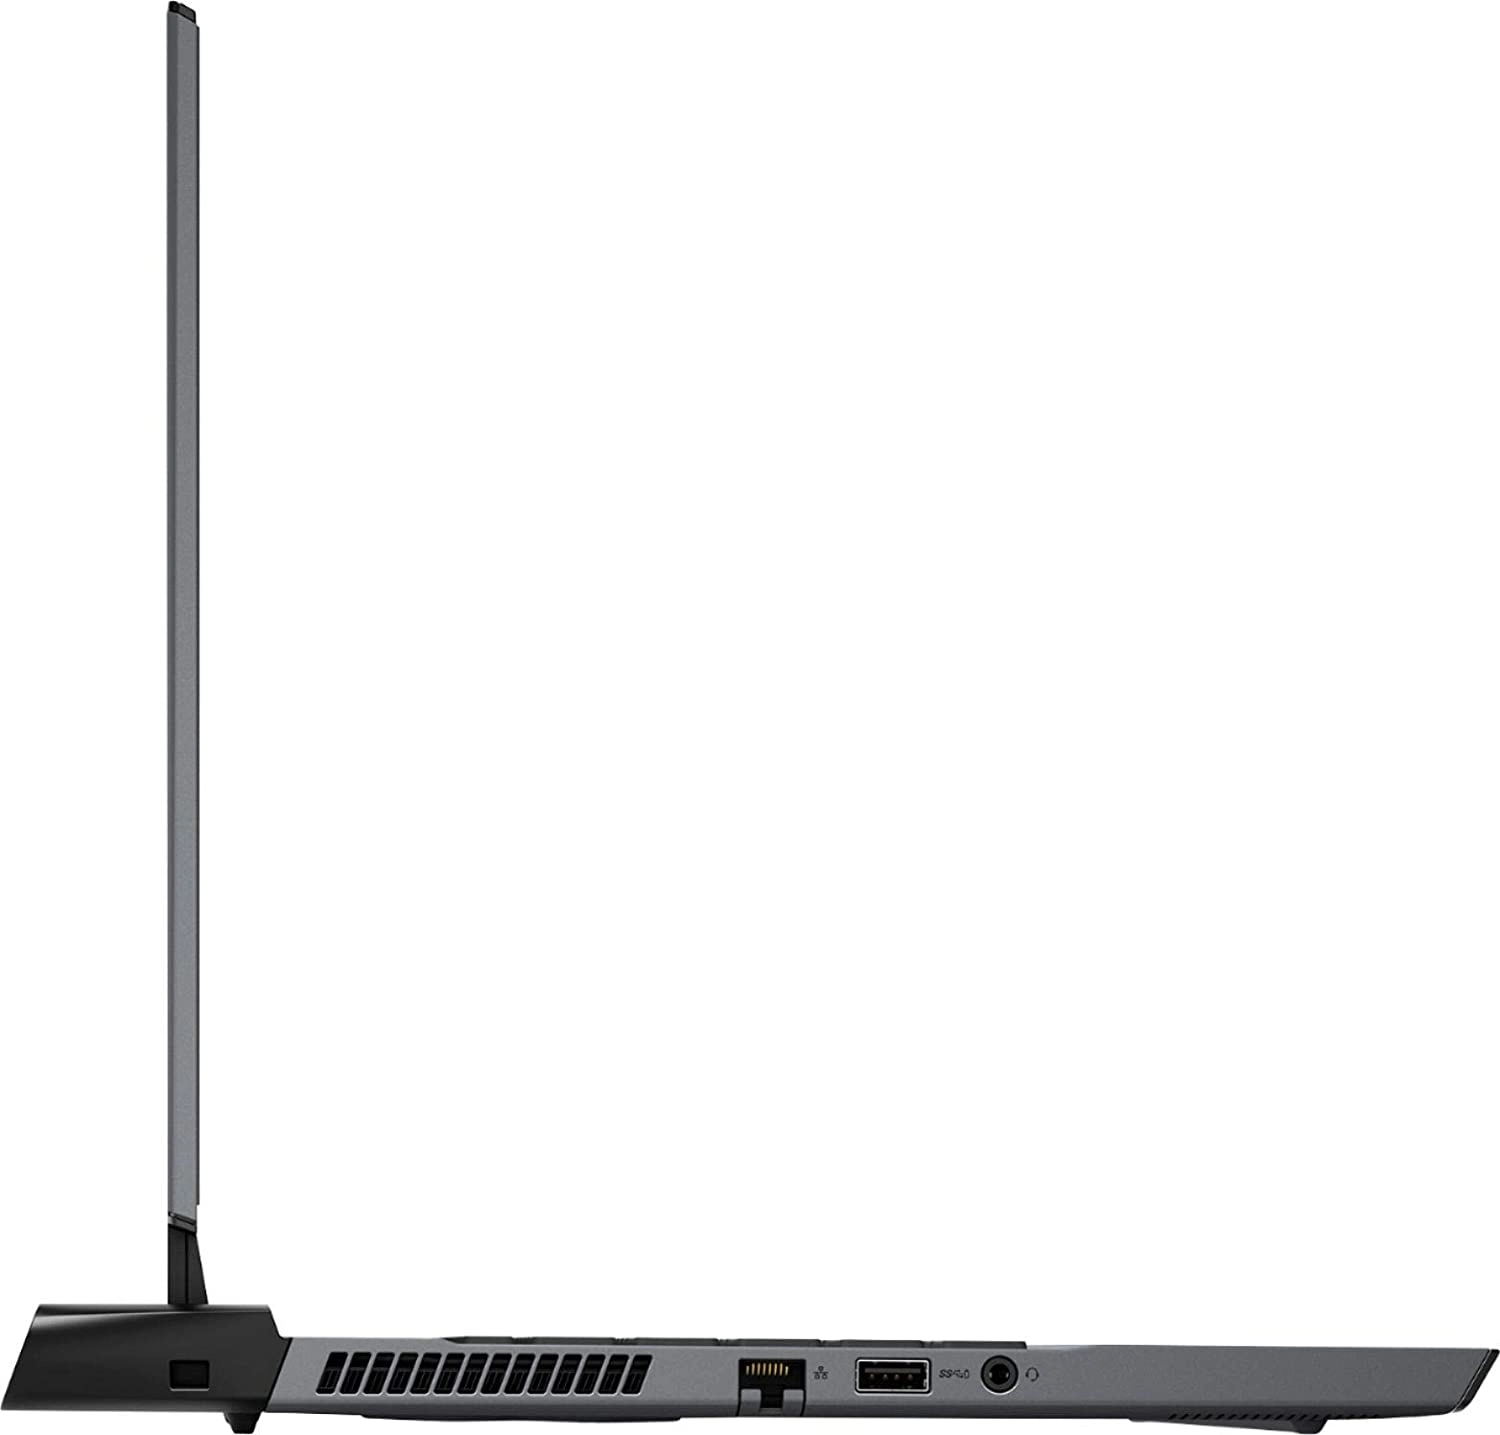 Alienware M15 R3 laptop image